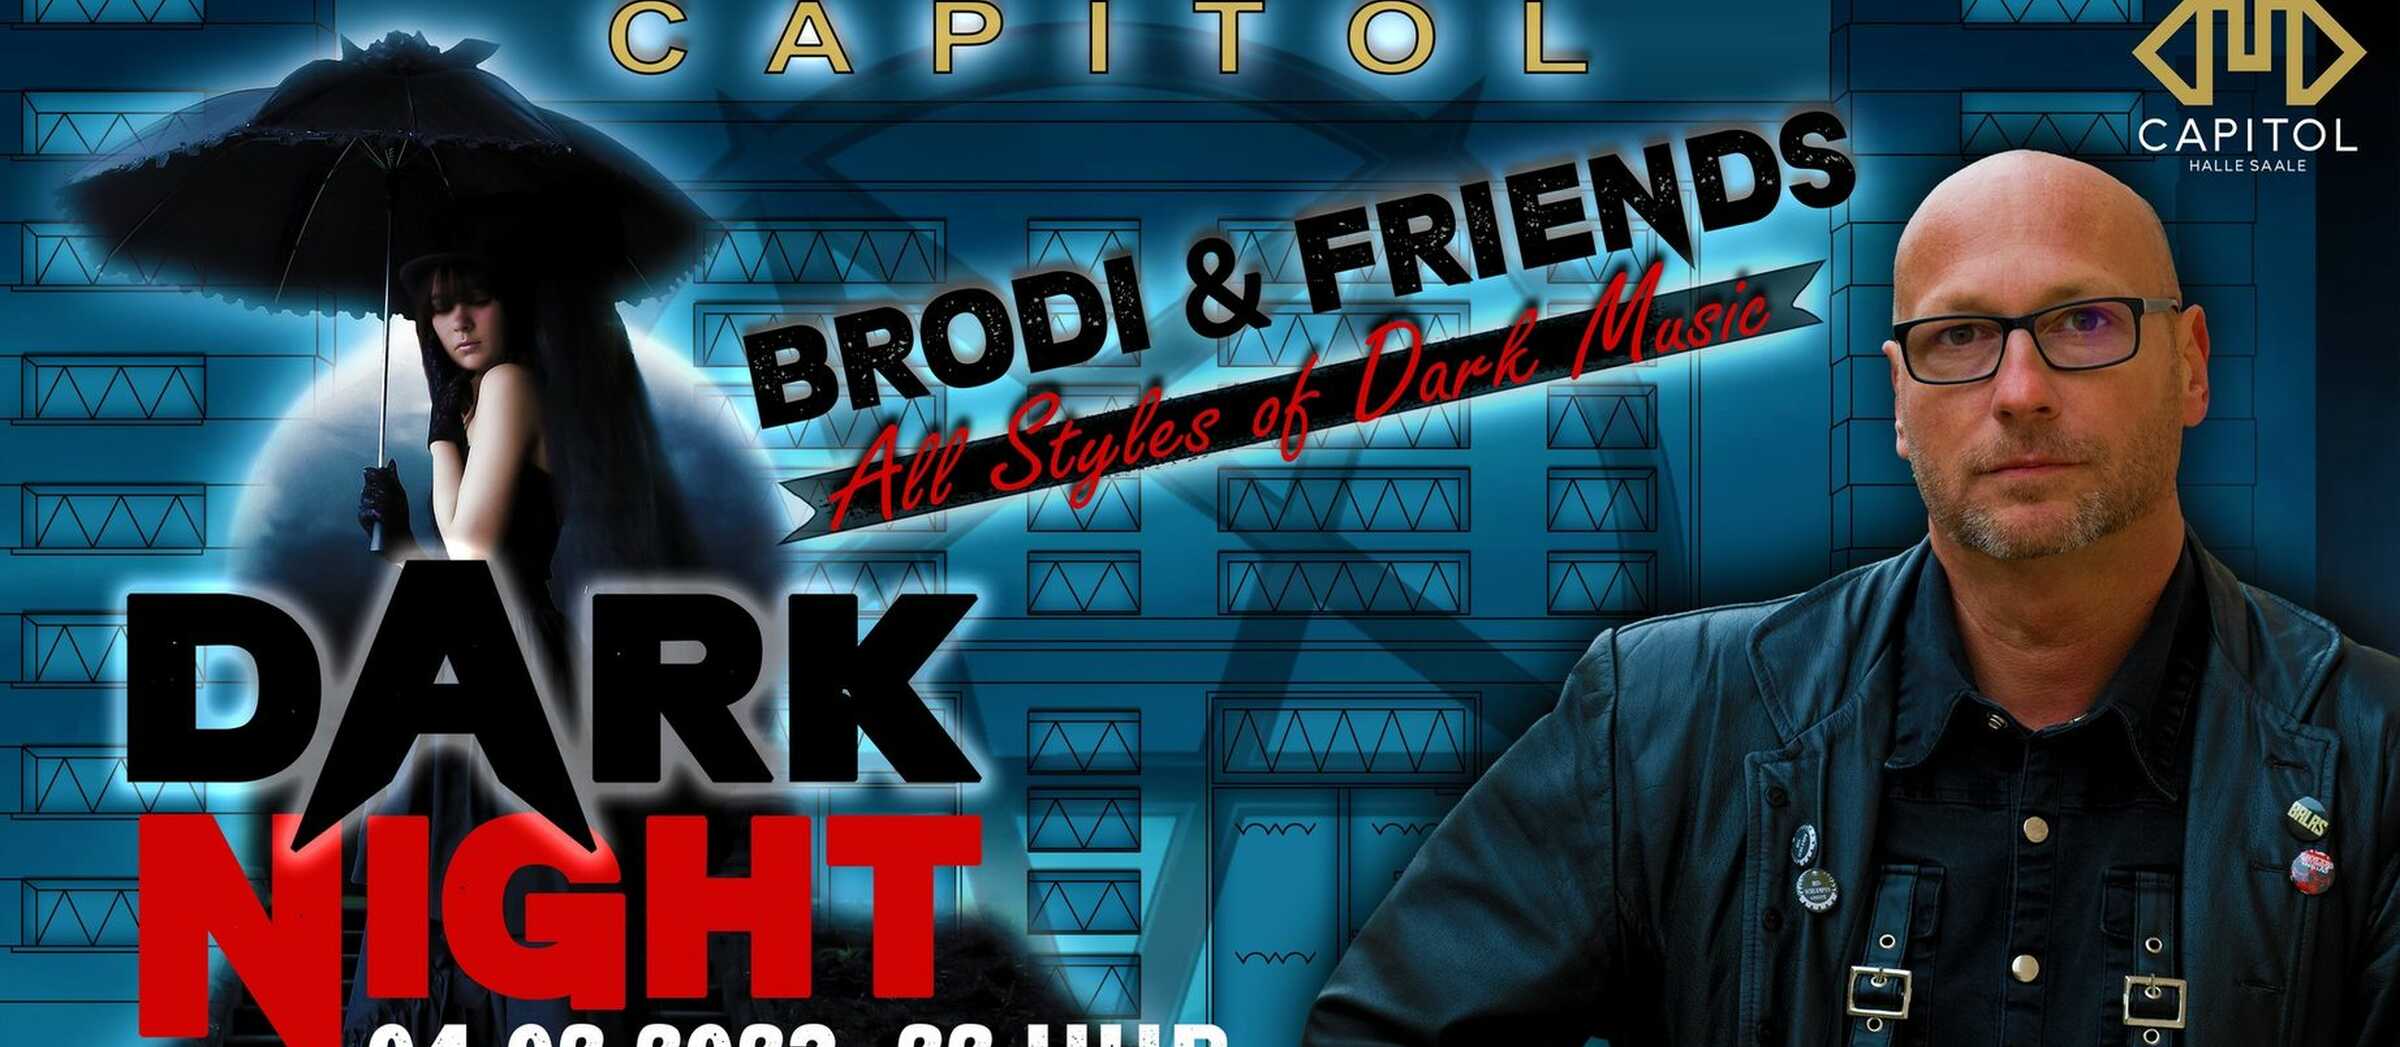 Darknight - Brodi & Friends